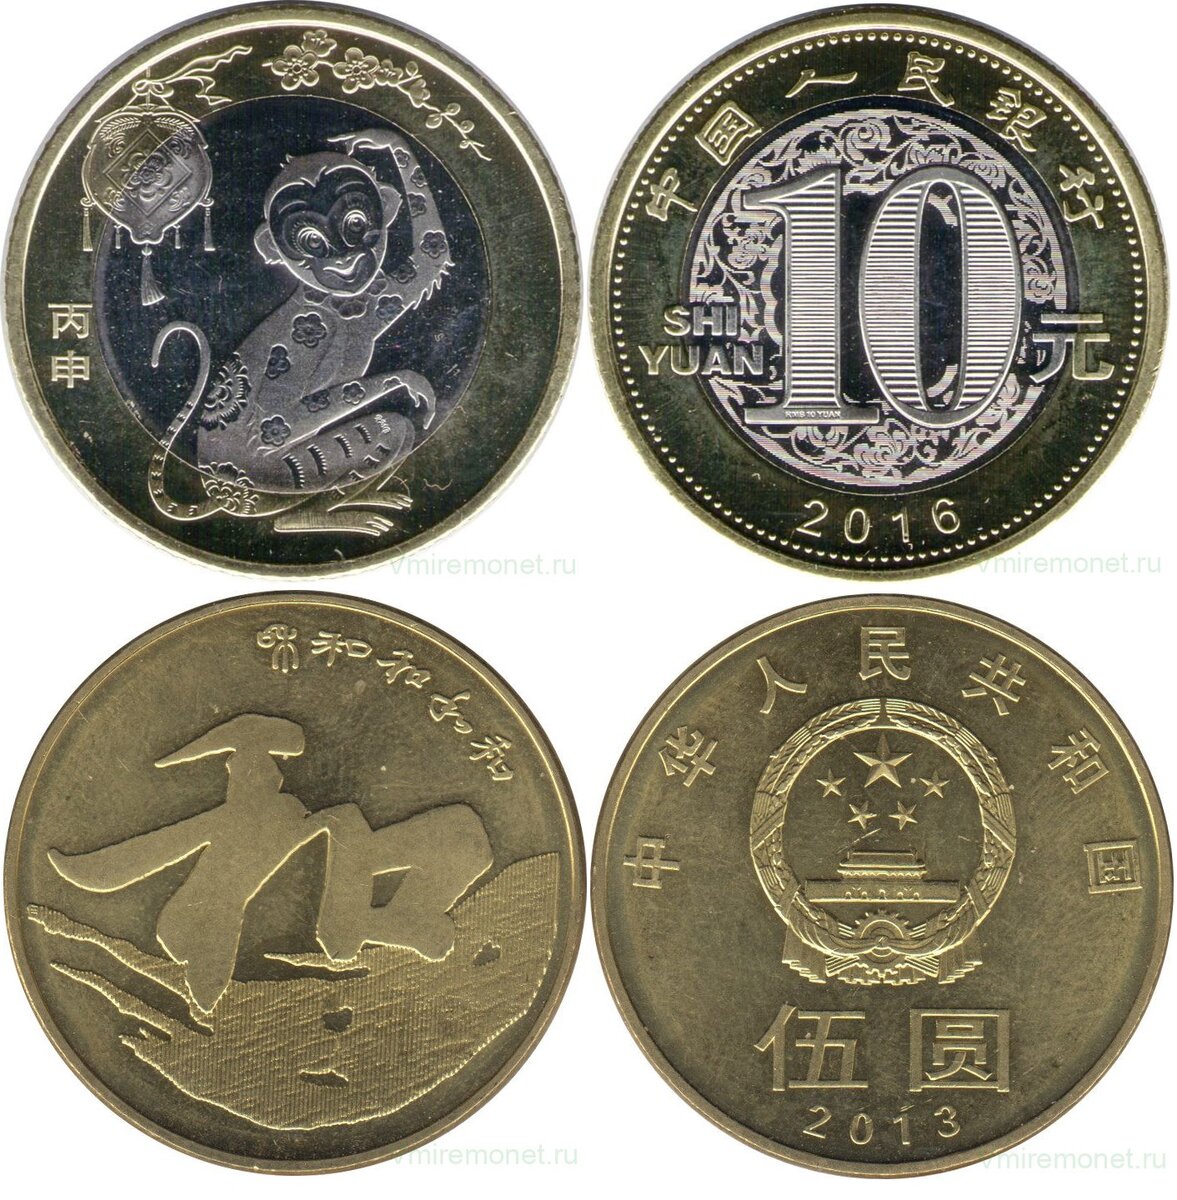 10 юаней в тенге. Картинка 10 юаней 2013.